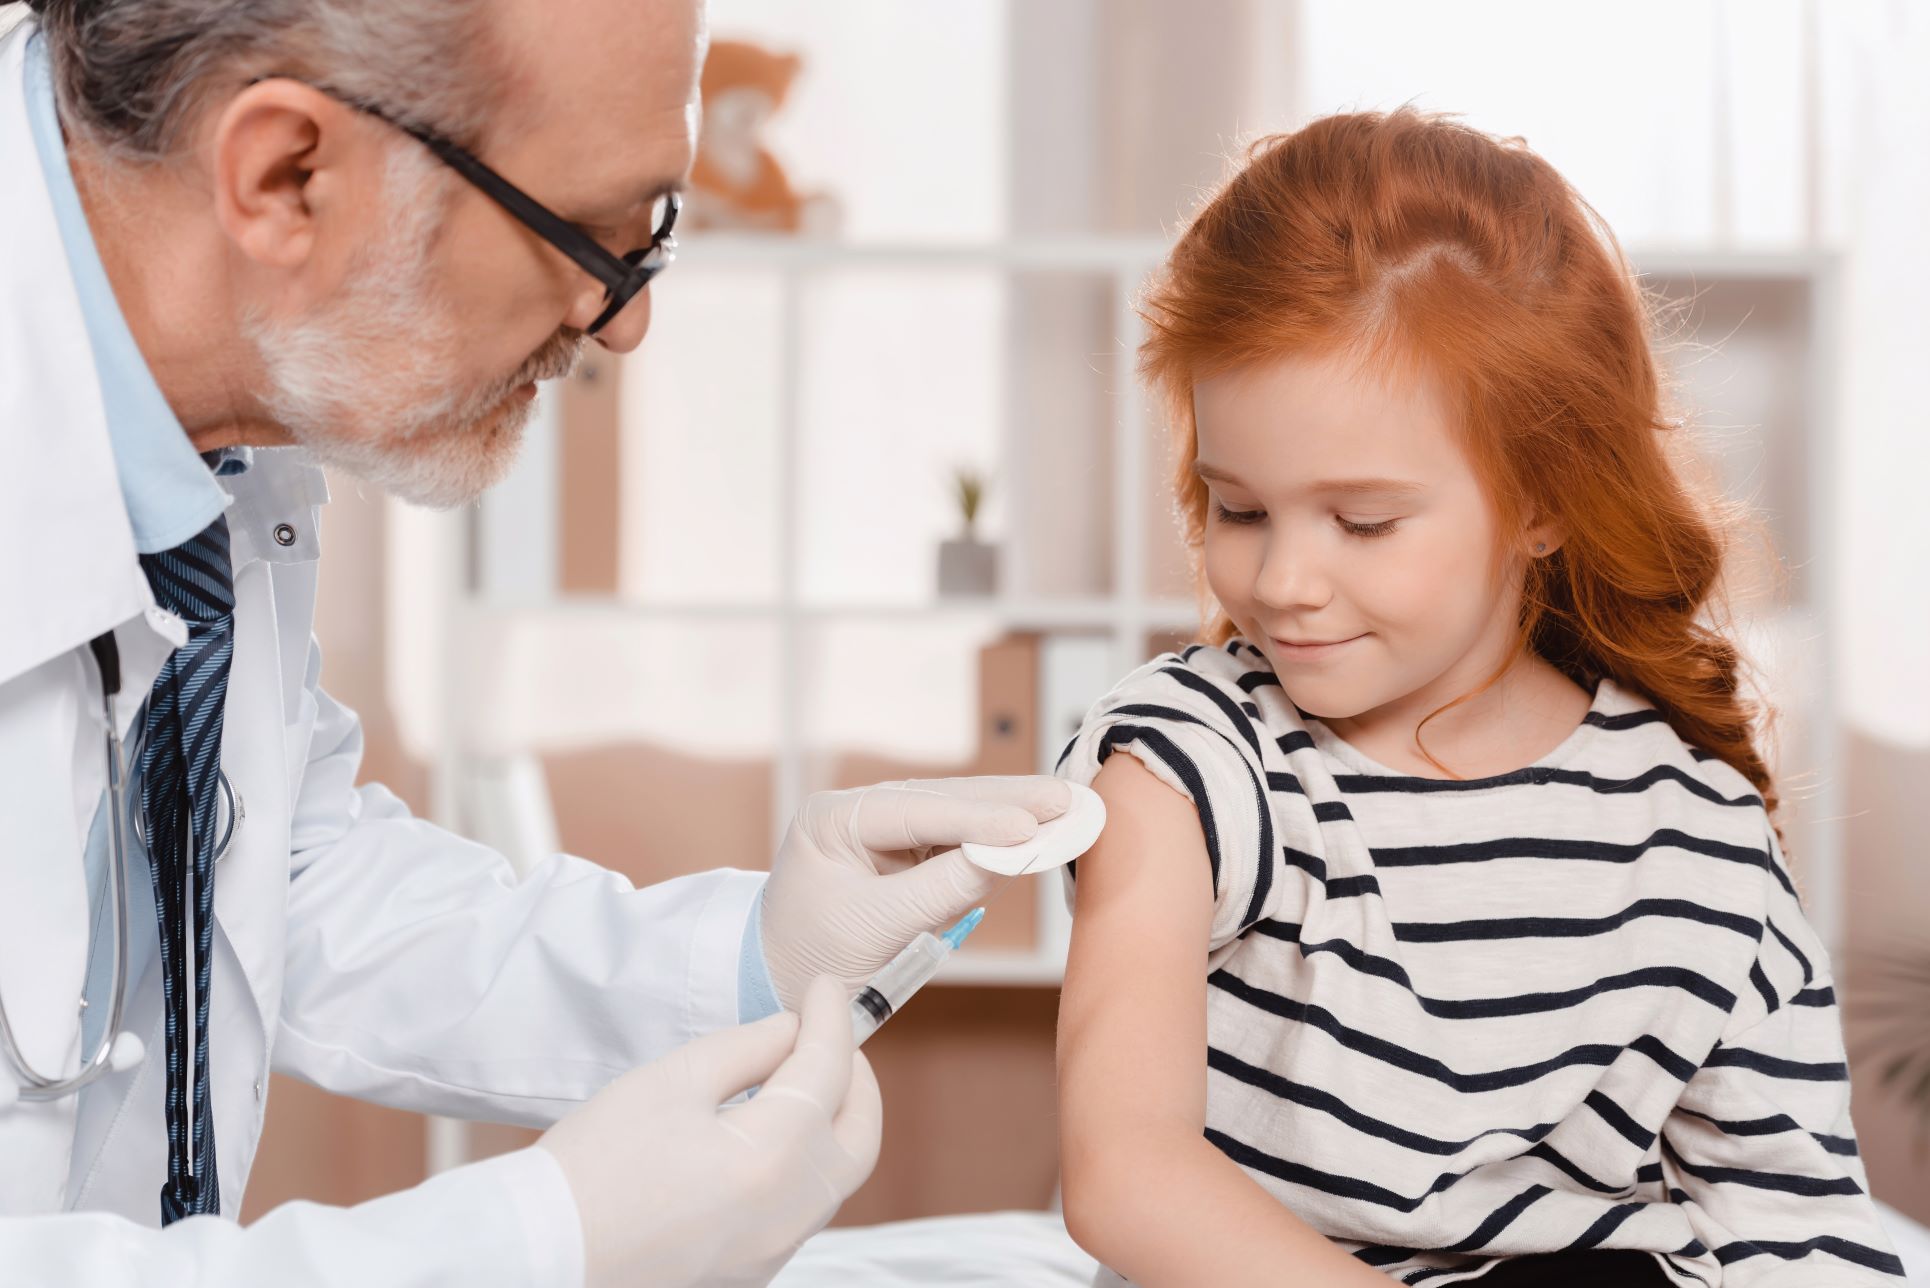 9 de junho – Hoje é o Dia Mundial da Imunização